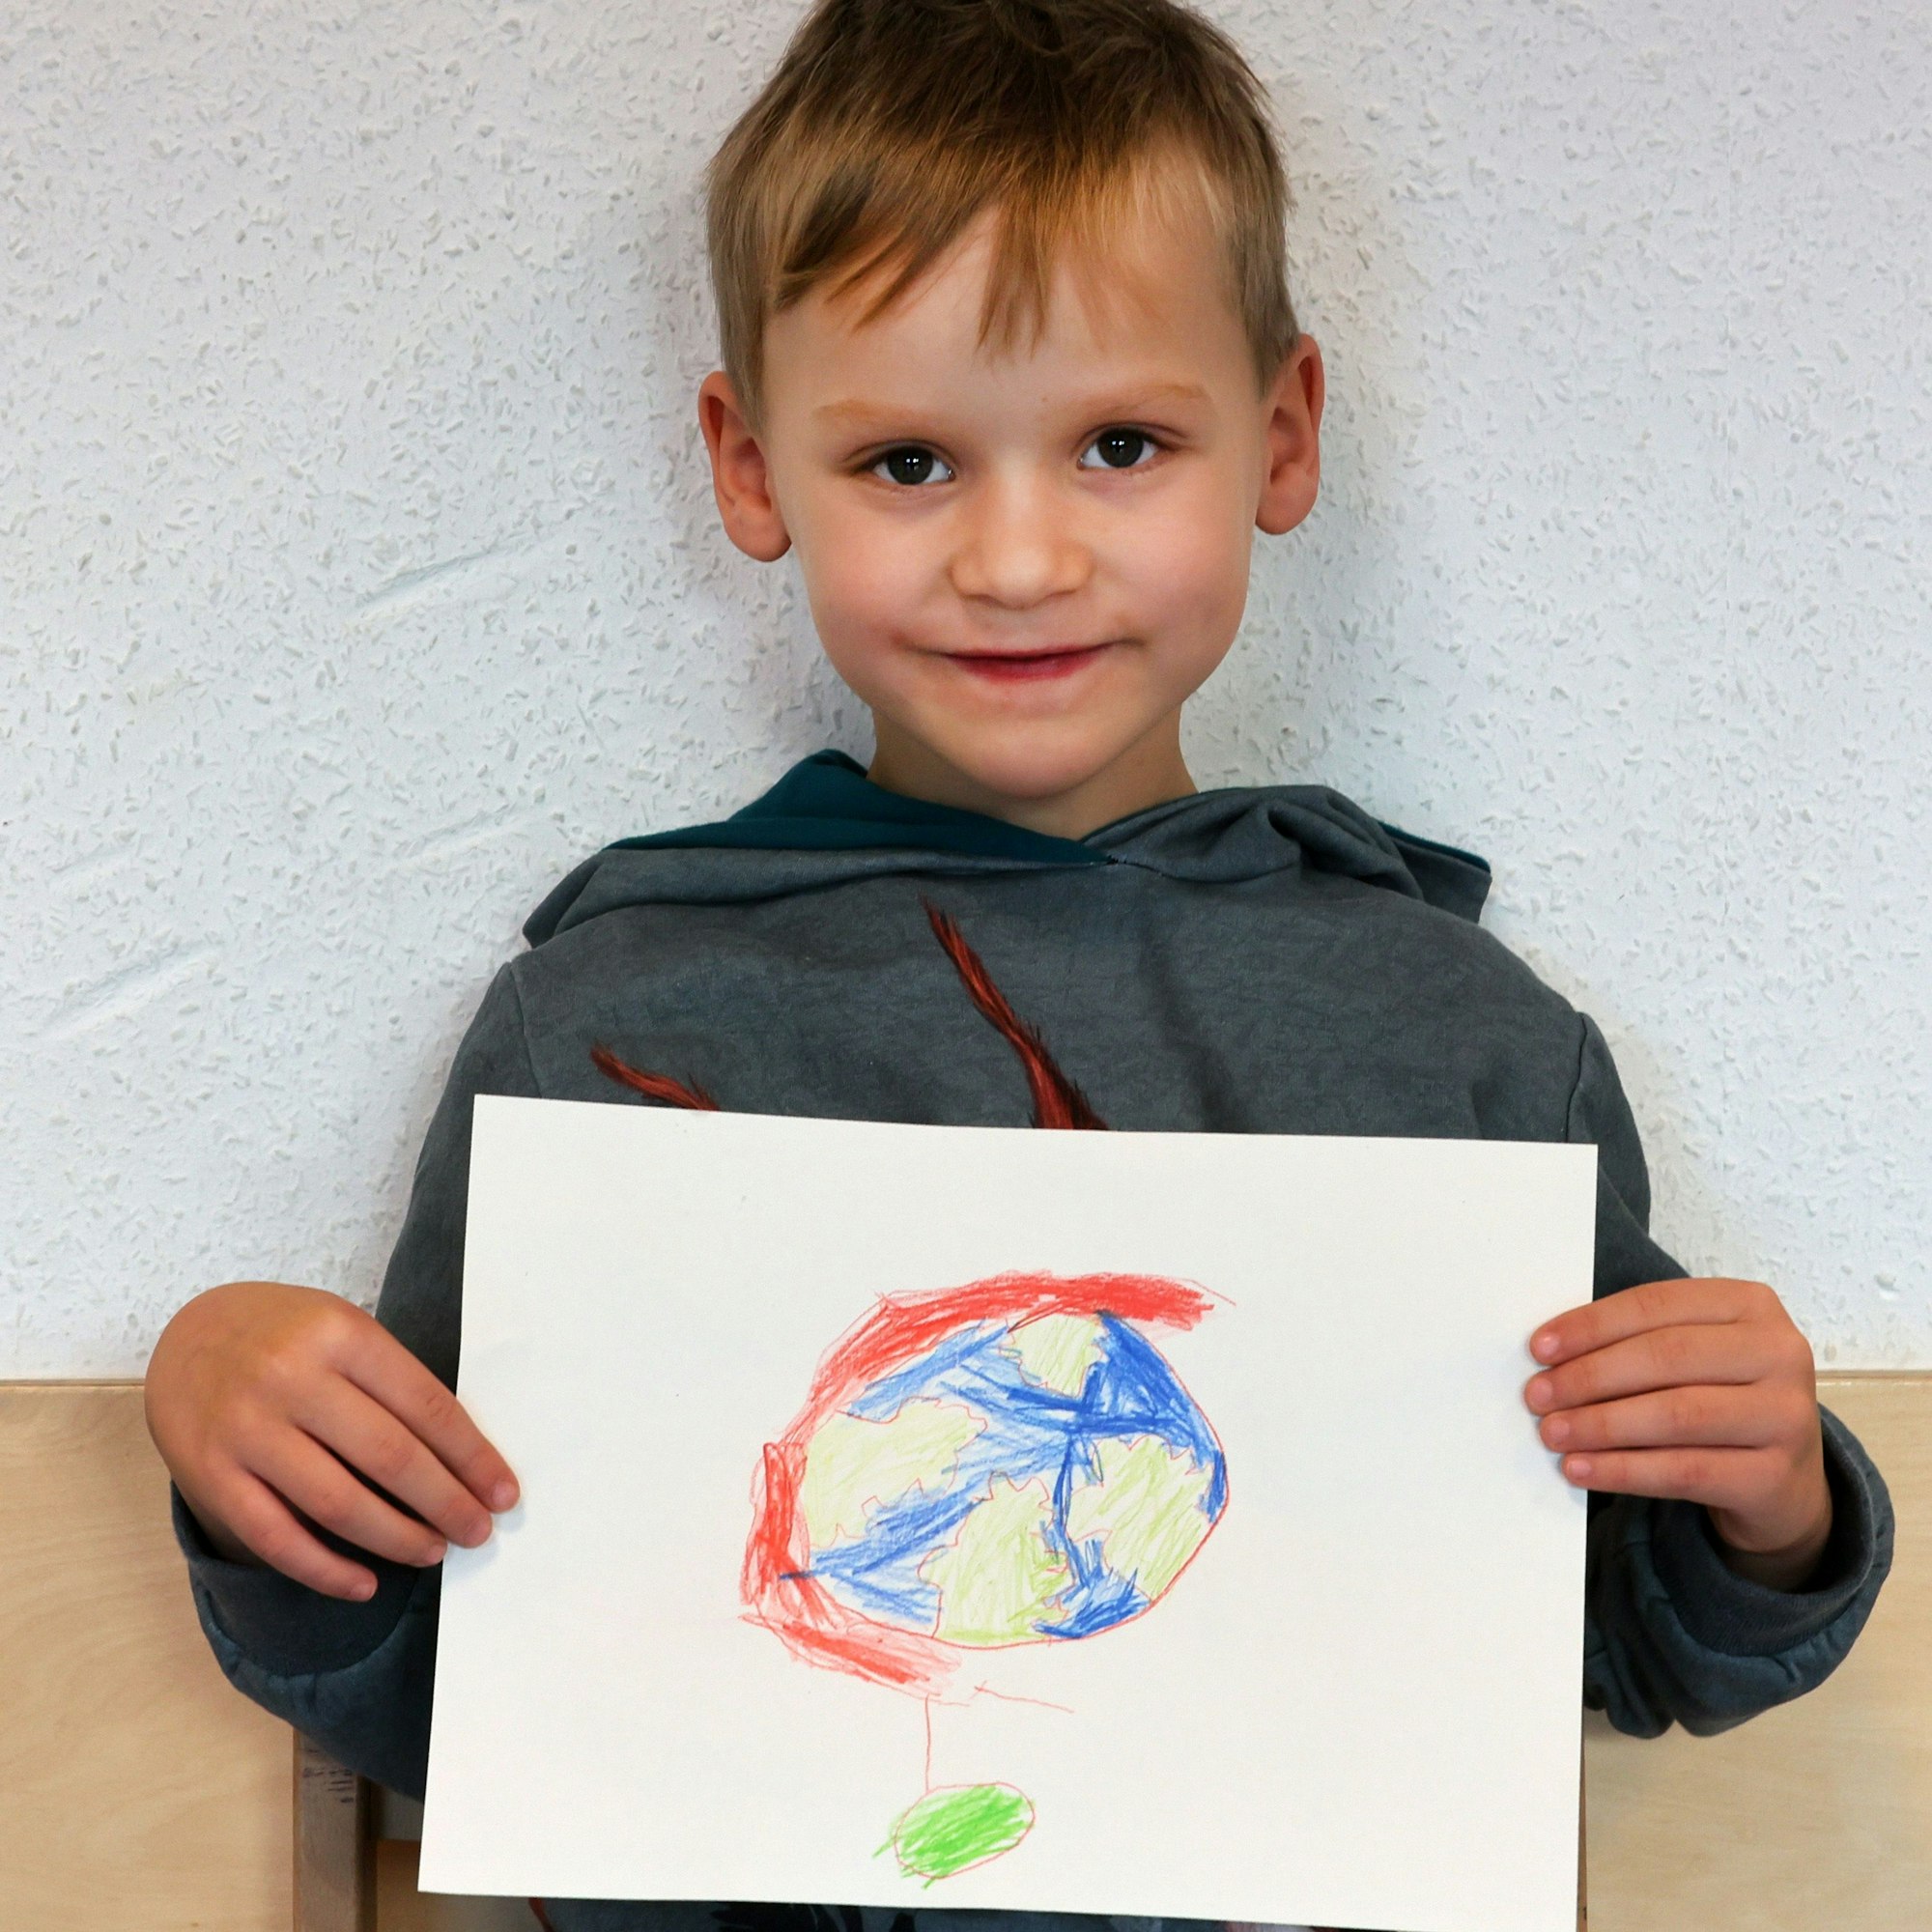 Ein Junge hält einen gemalten Wunschzettel in der Hand und blickt in die Kamera.

